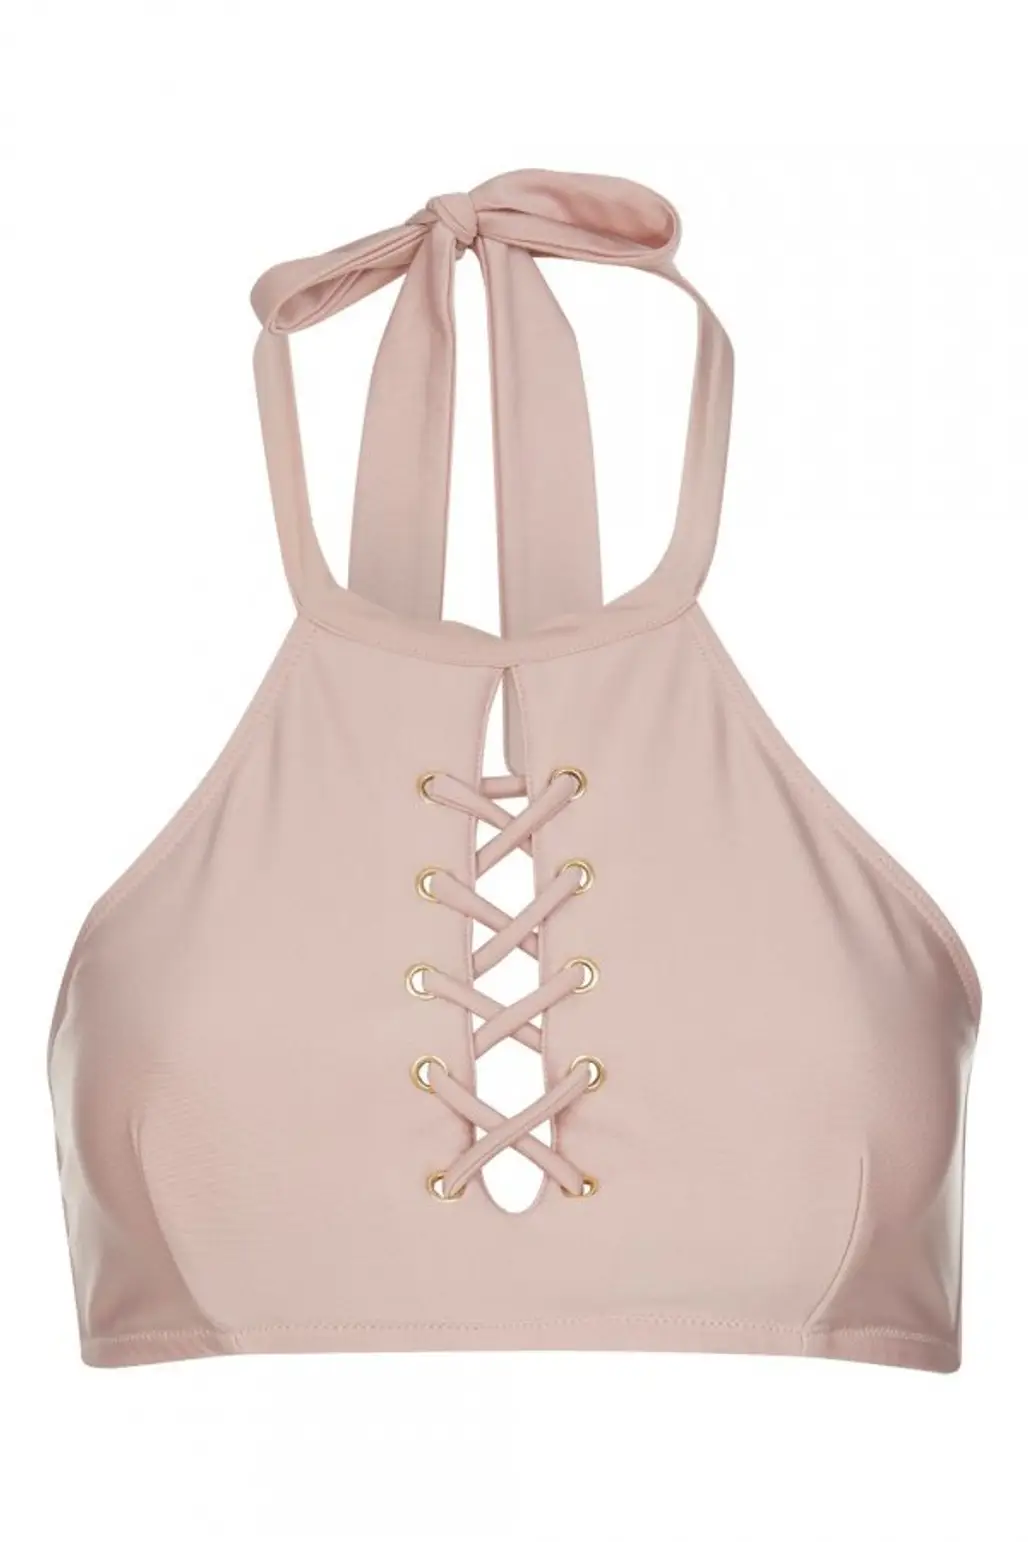 handbag, pink, bag, shoulder bag, active undergarment,